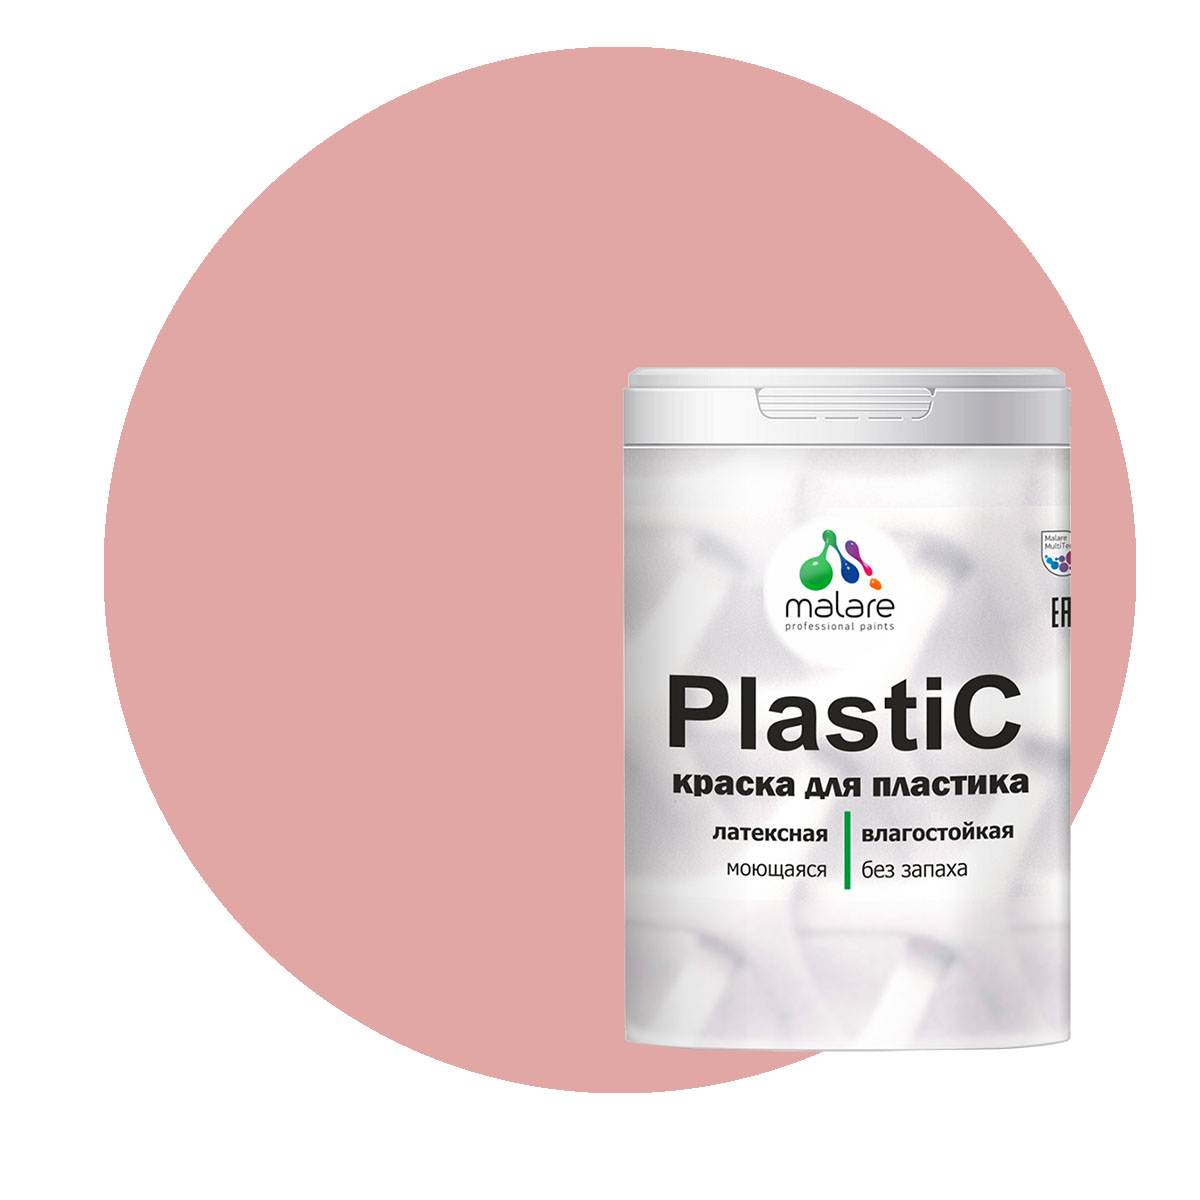 Краска Malare PlastiC для пластика, ПВХ, для сайдинга, розовый пион 2 кг. краска malare plastic для пластика пвх для сайдинга розовый пион 10 кг